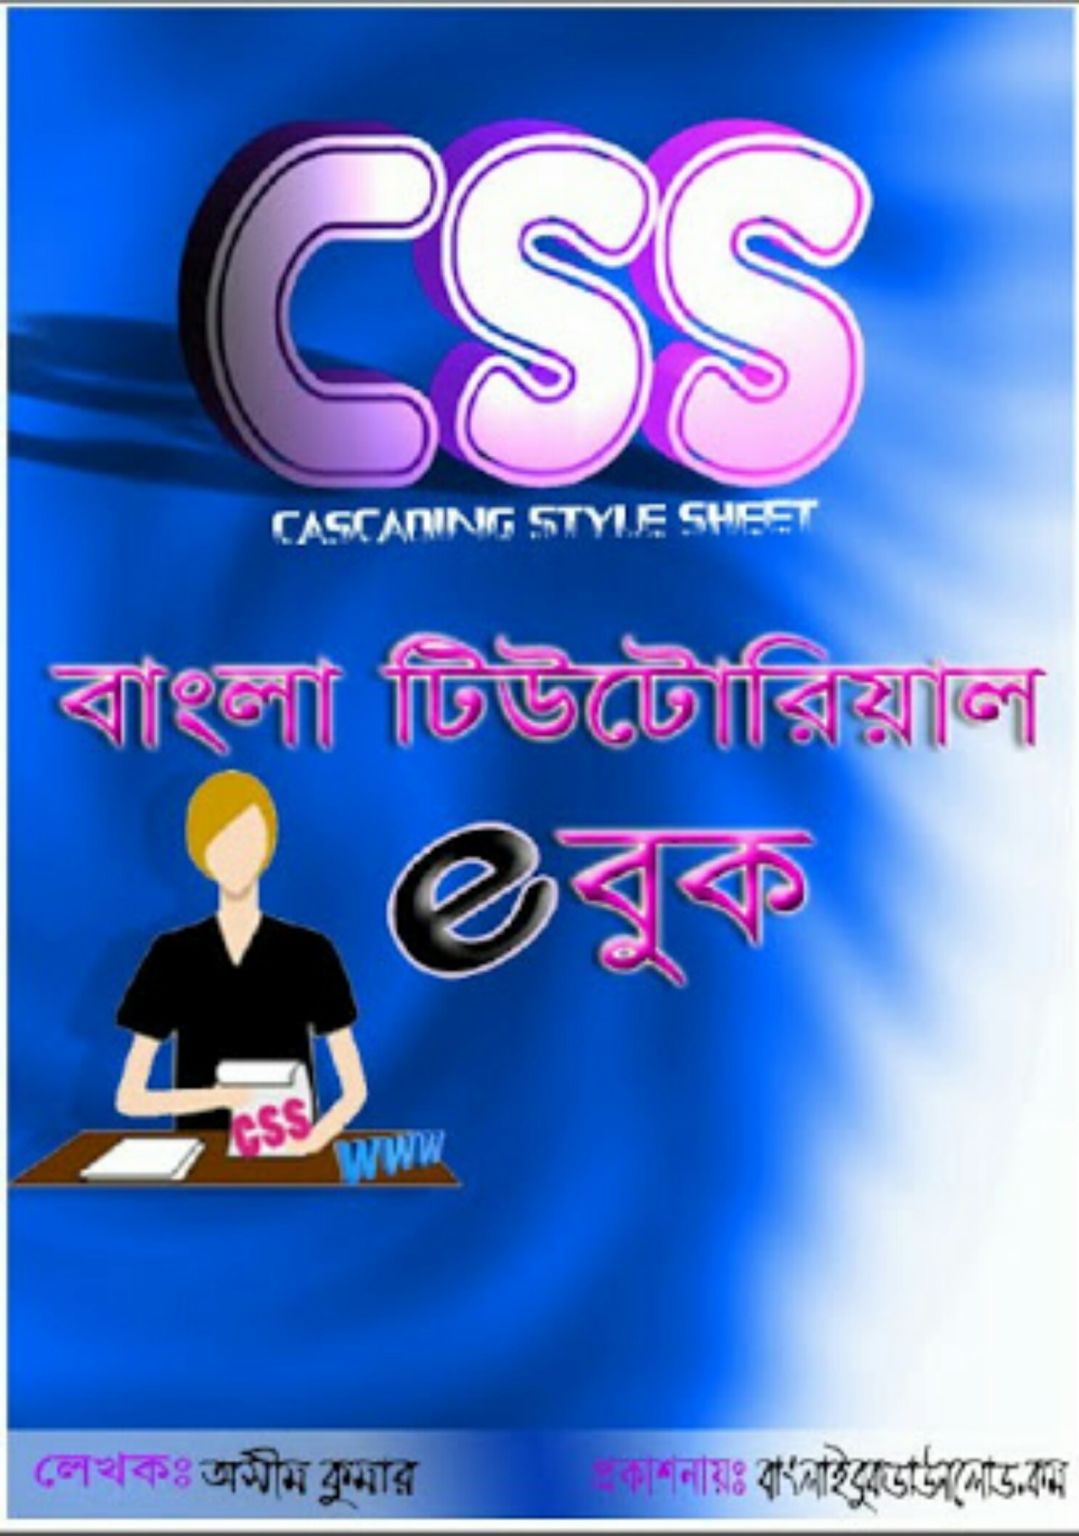 ডাউনলোড করে নিন সহজে CSS শেখার বাংলা পিডিএফ। সাথে HTML5 শেখার পিডিএফ ফ্রি।